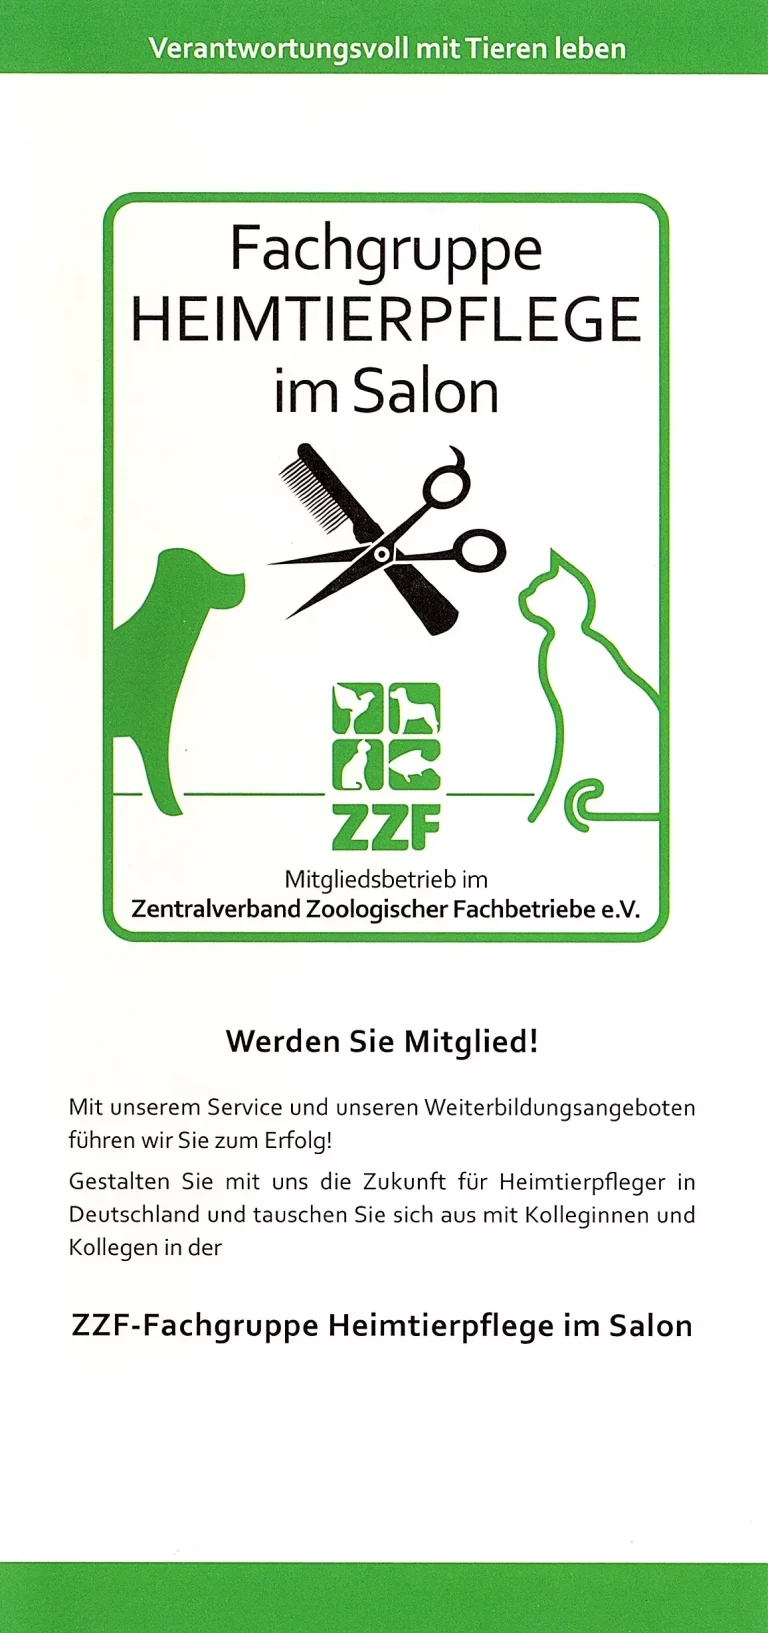 ZZF Fachgruppe Heimtierpflege Wiesbaden 01 768x1633